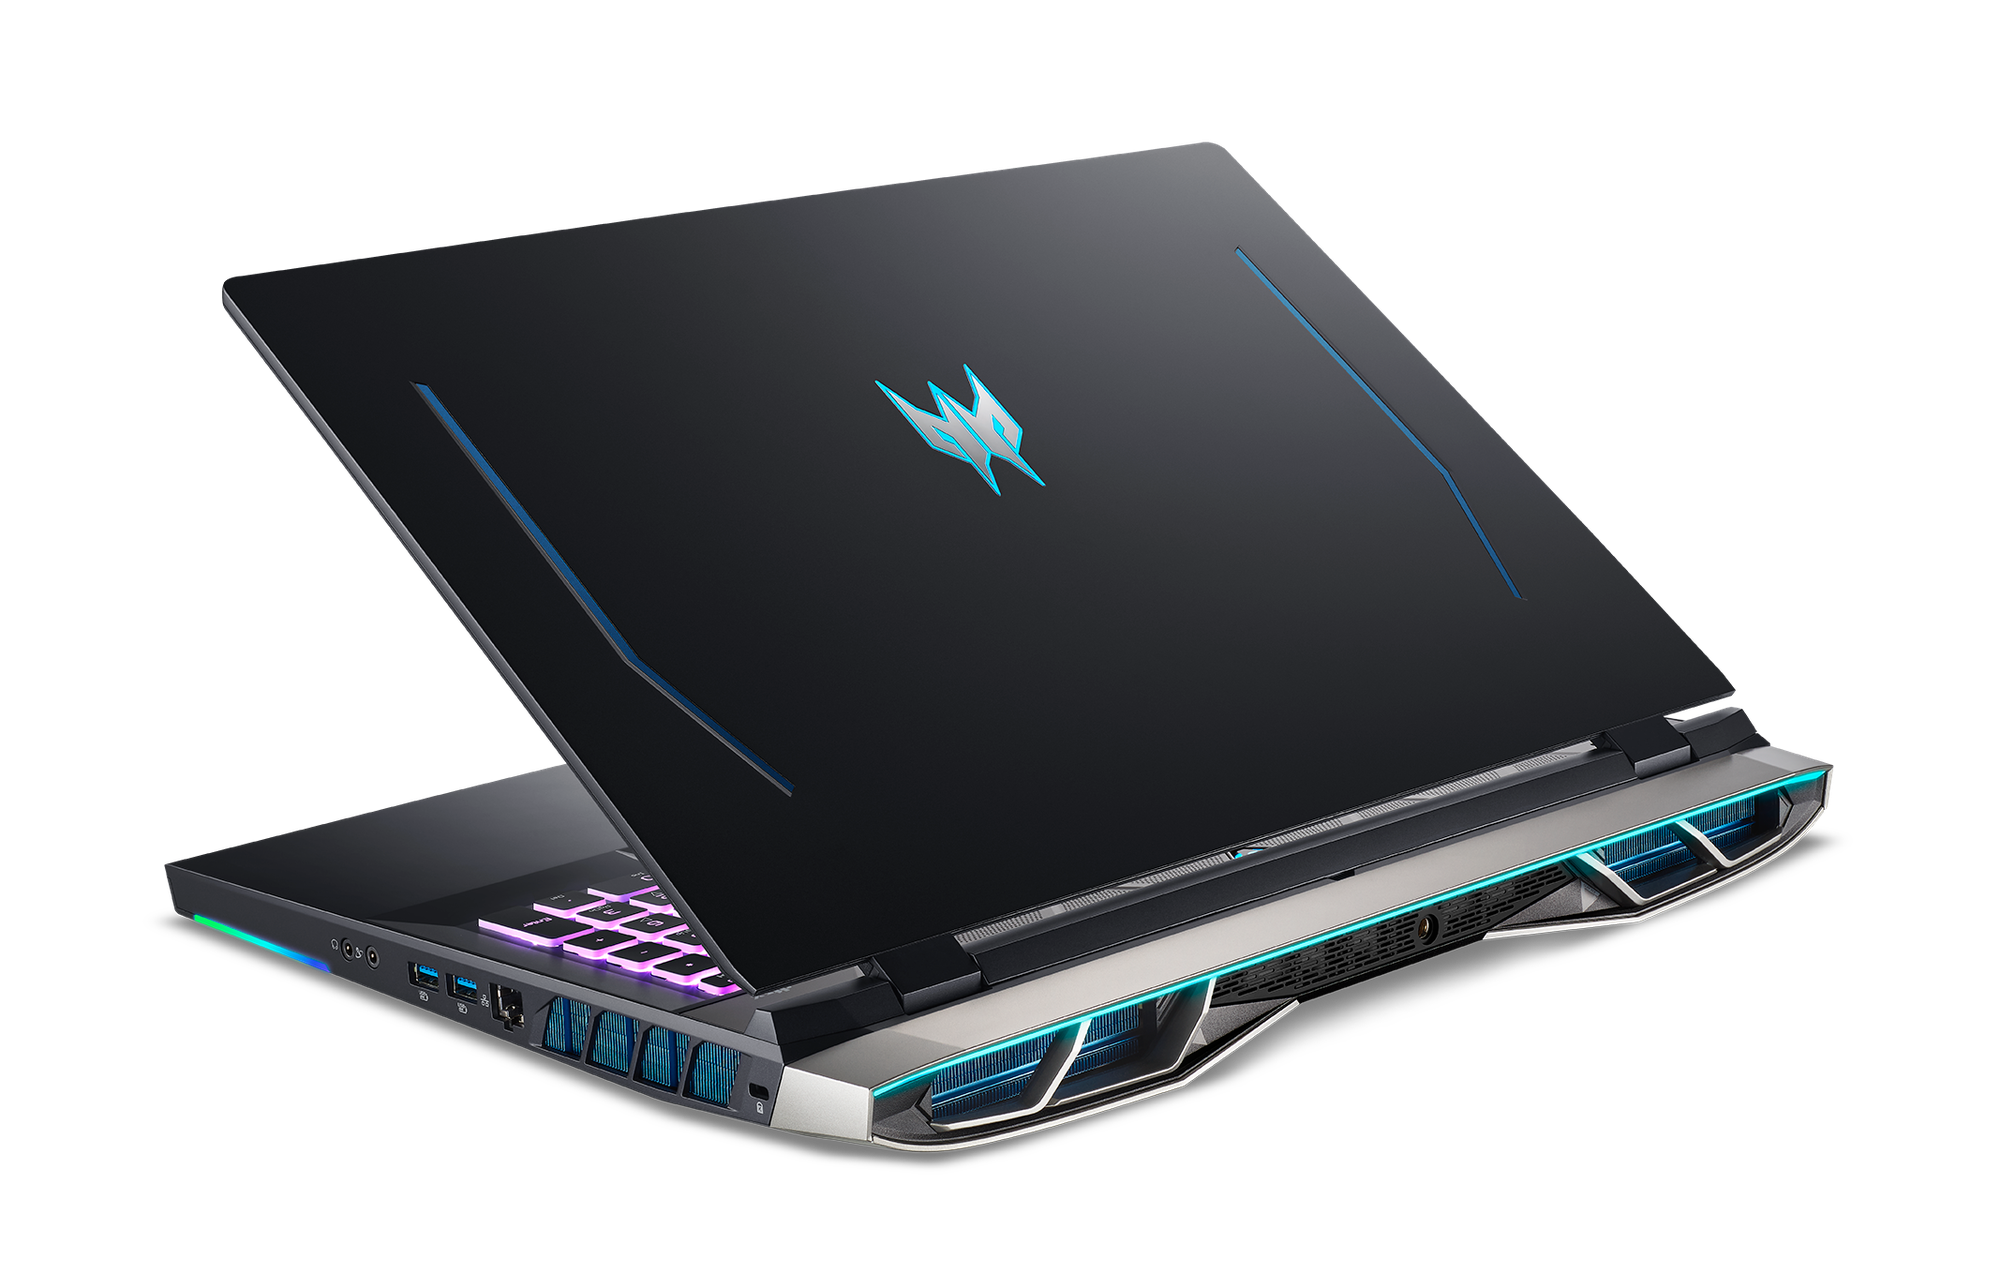 Acer giới thiệu laptop gaming cao cấp Predator Helios 500, giá từ 99,99 triệu - Ảnh 2.